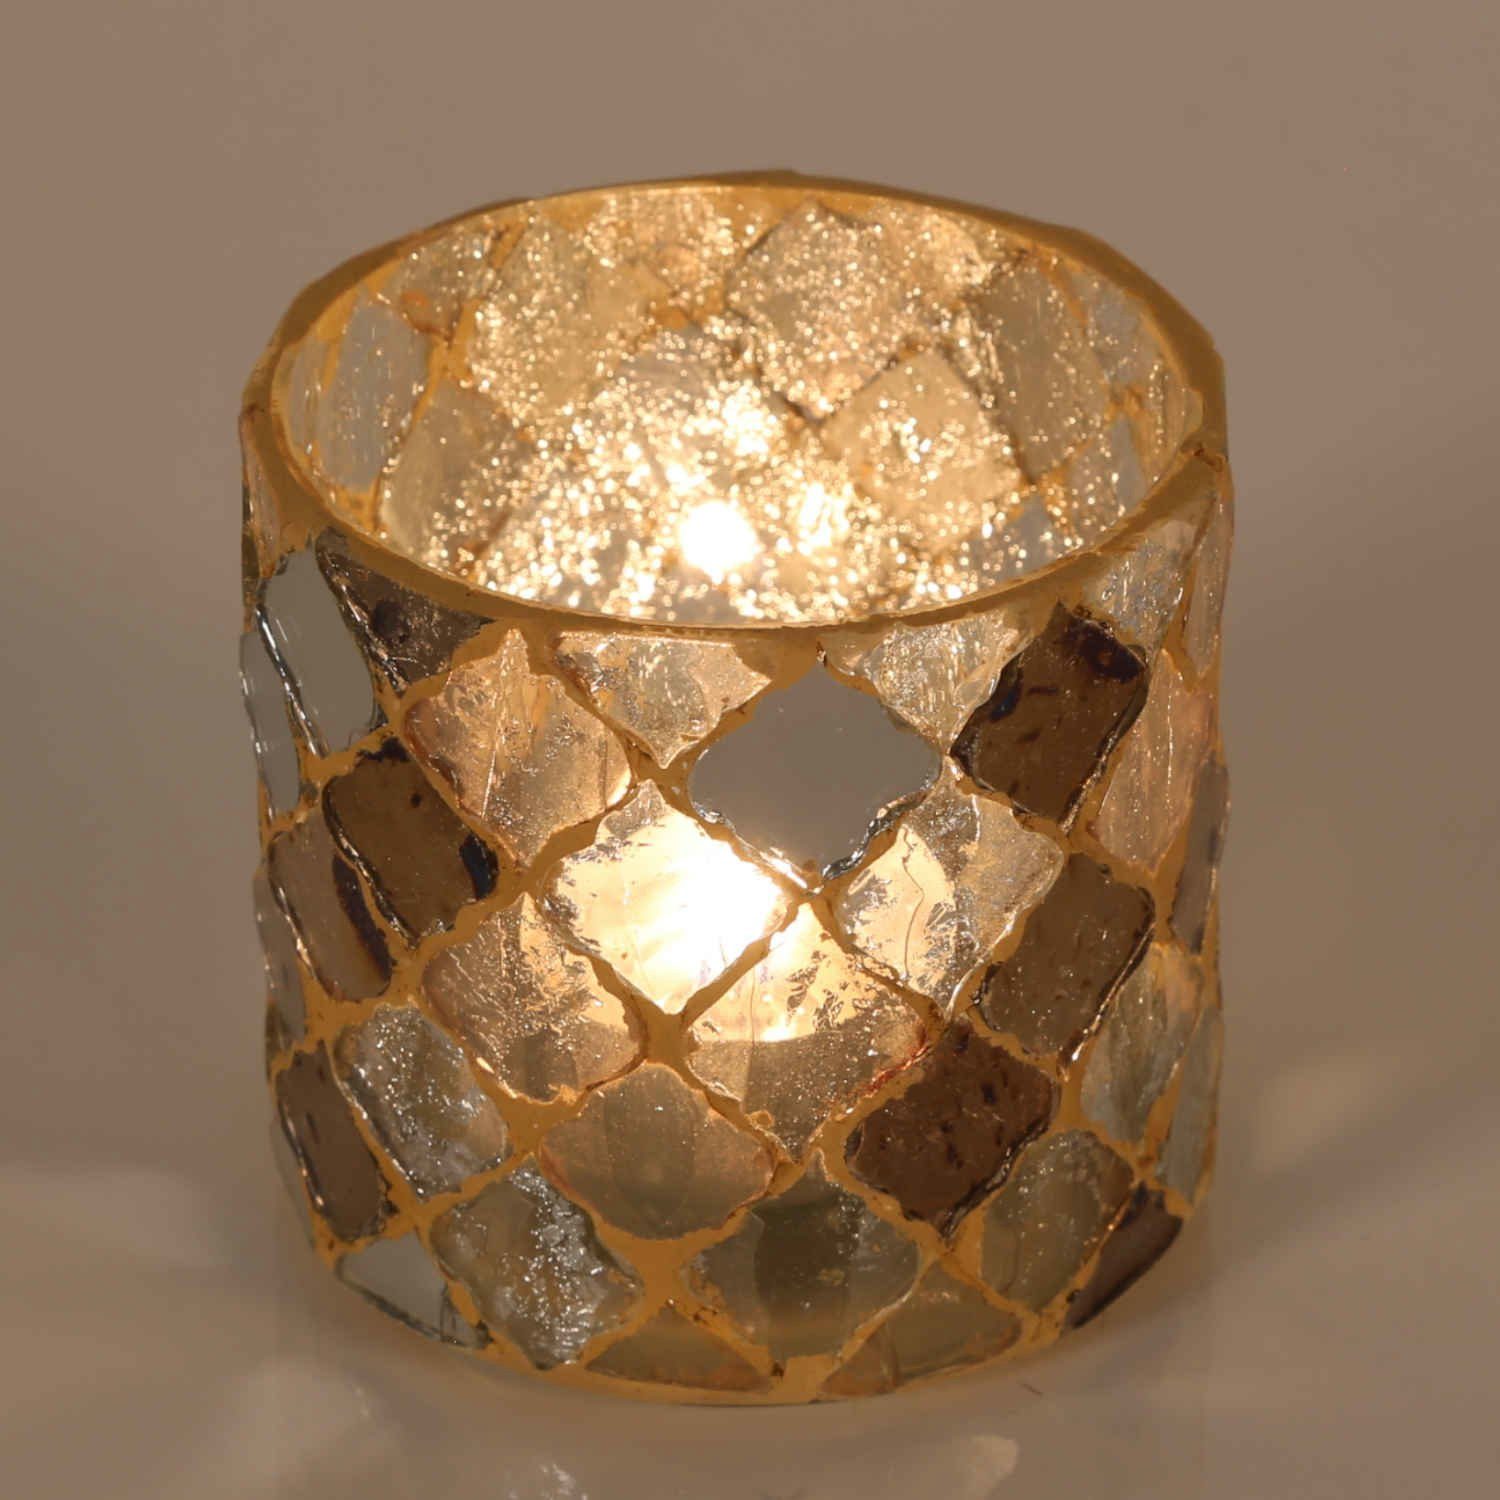 Casa Moro Windlicht Orientalisches Mosaik Windlicht Athen Gold rund aus Glas (Weihnachten Teelichthalter Boho Chic Kerzenständer Kerzenhalter, Glaswindlicht in den Größen S und M oder als 2er Set bestellbar), Kunsthandwerk pur für einfach schöner wohnen